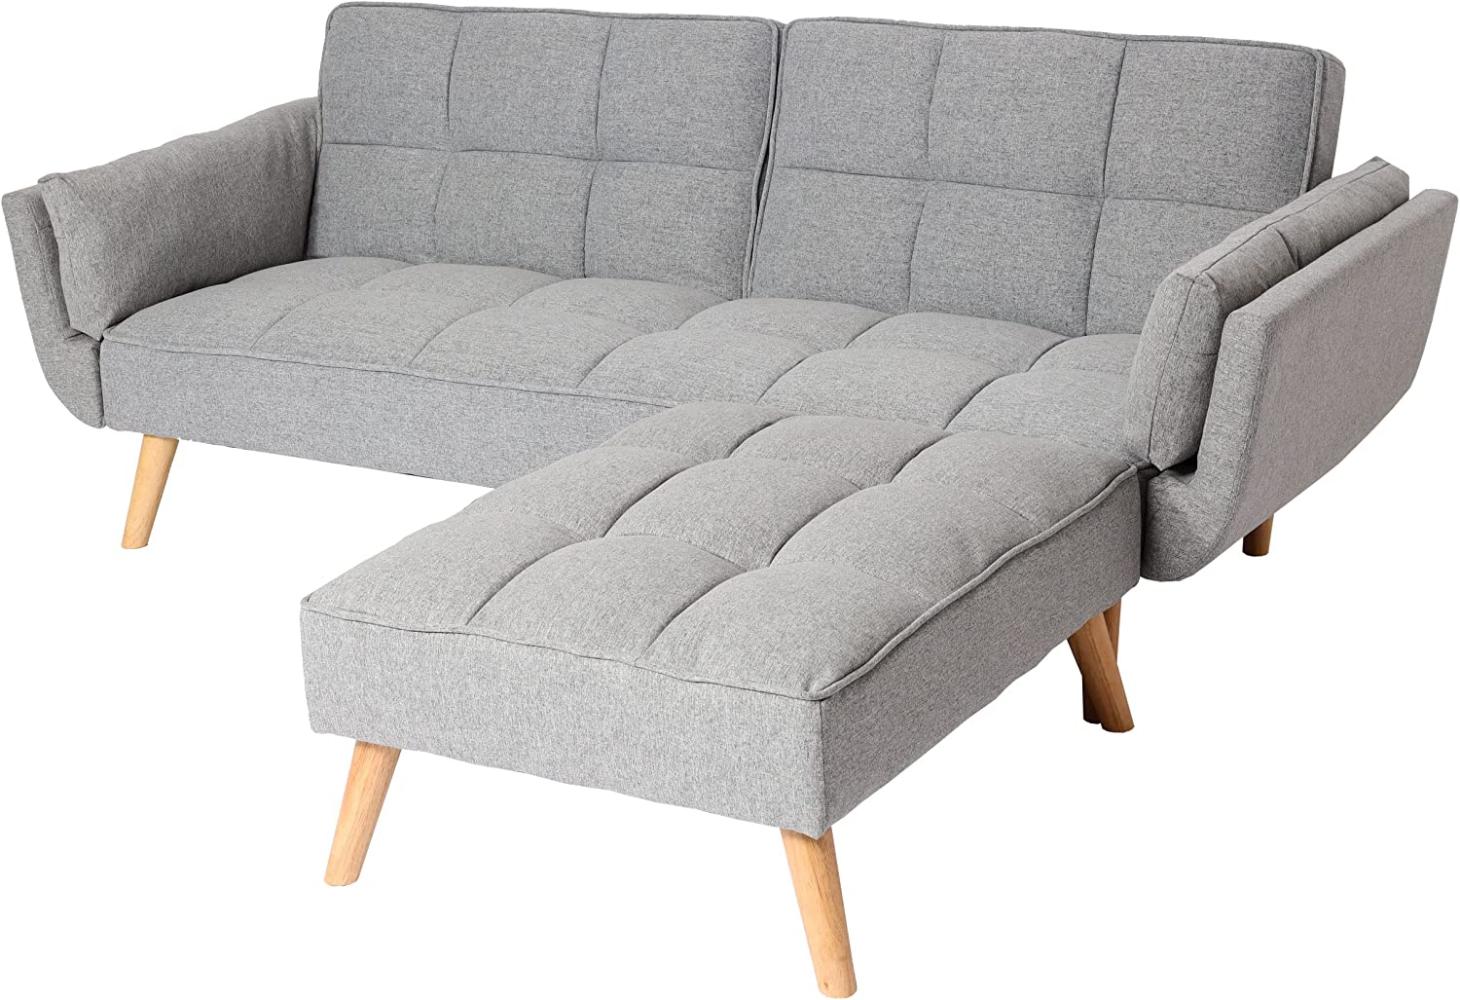 Mendler Schlafsofa mit Ottomane, Couch Sofa Gästebett, Schlaffunktion 218x175cm ~ Stoff/Textil hellgrau Bild 1